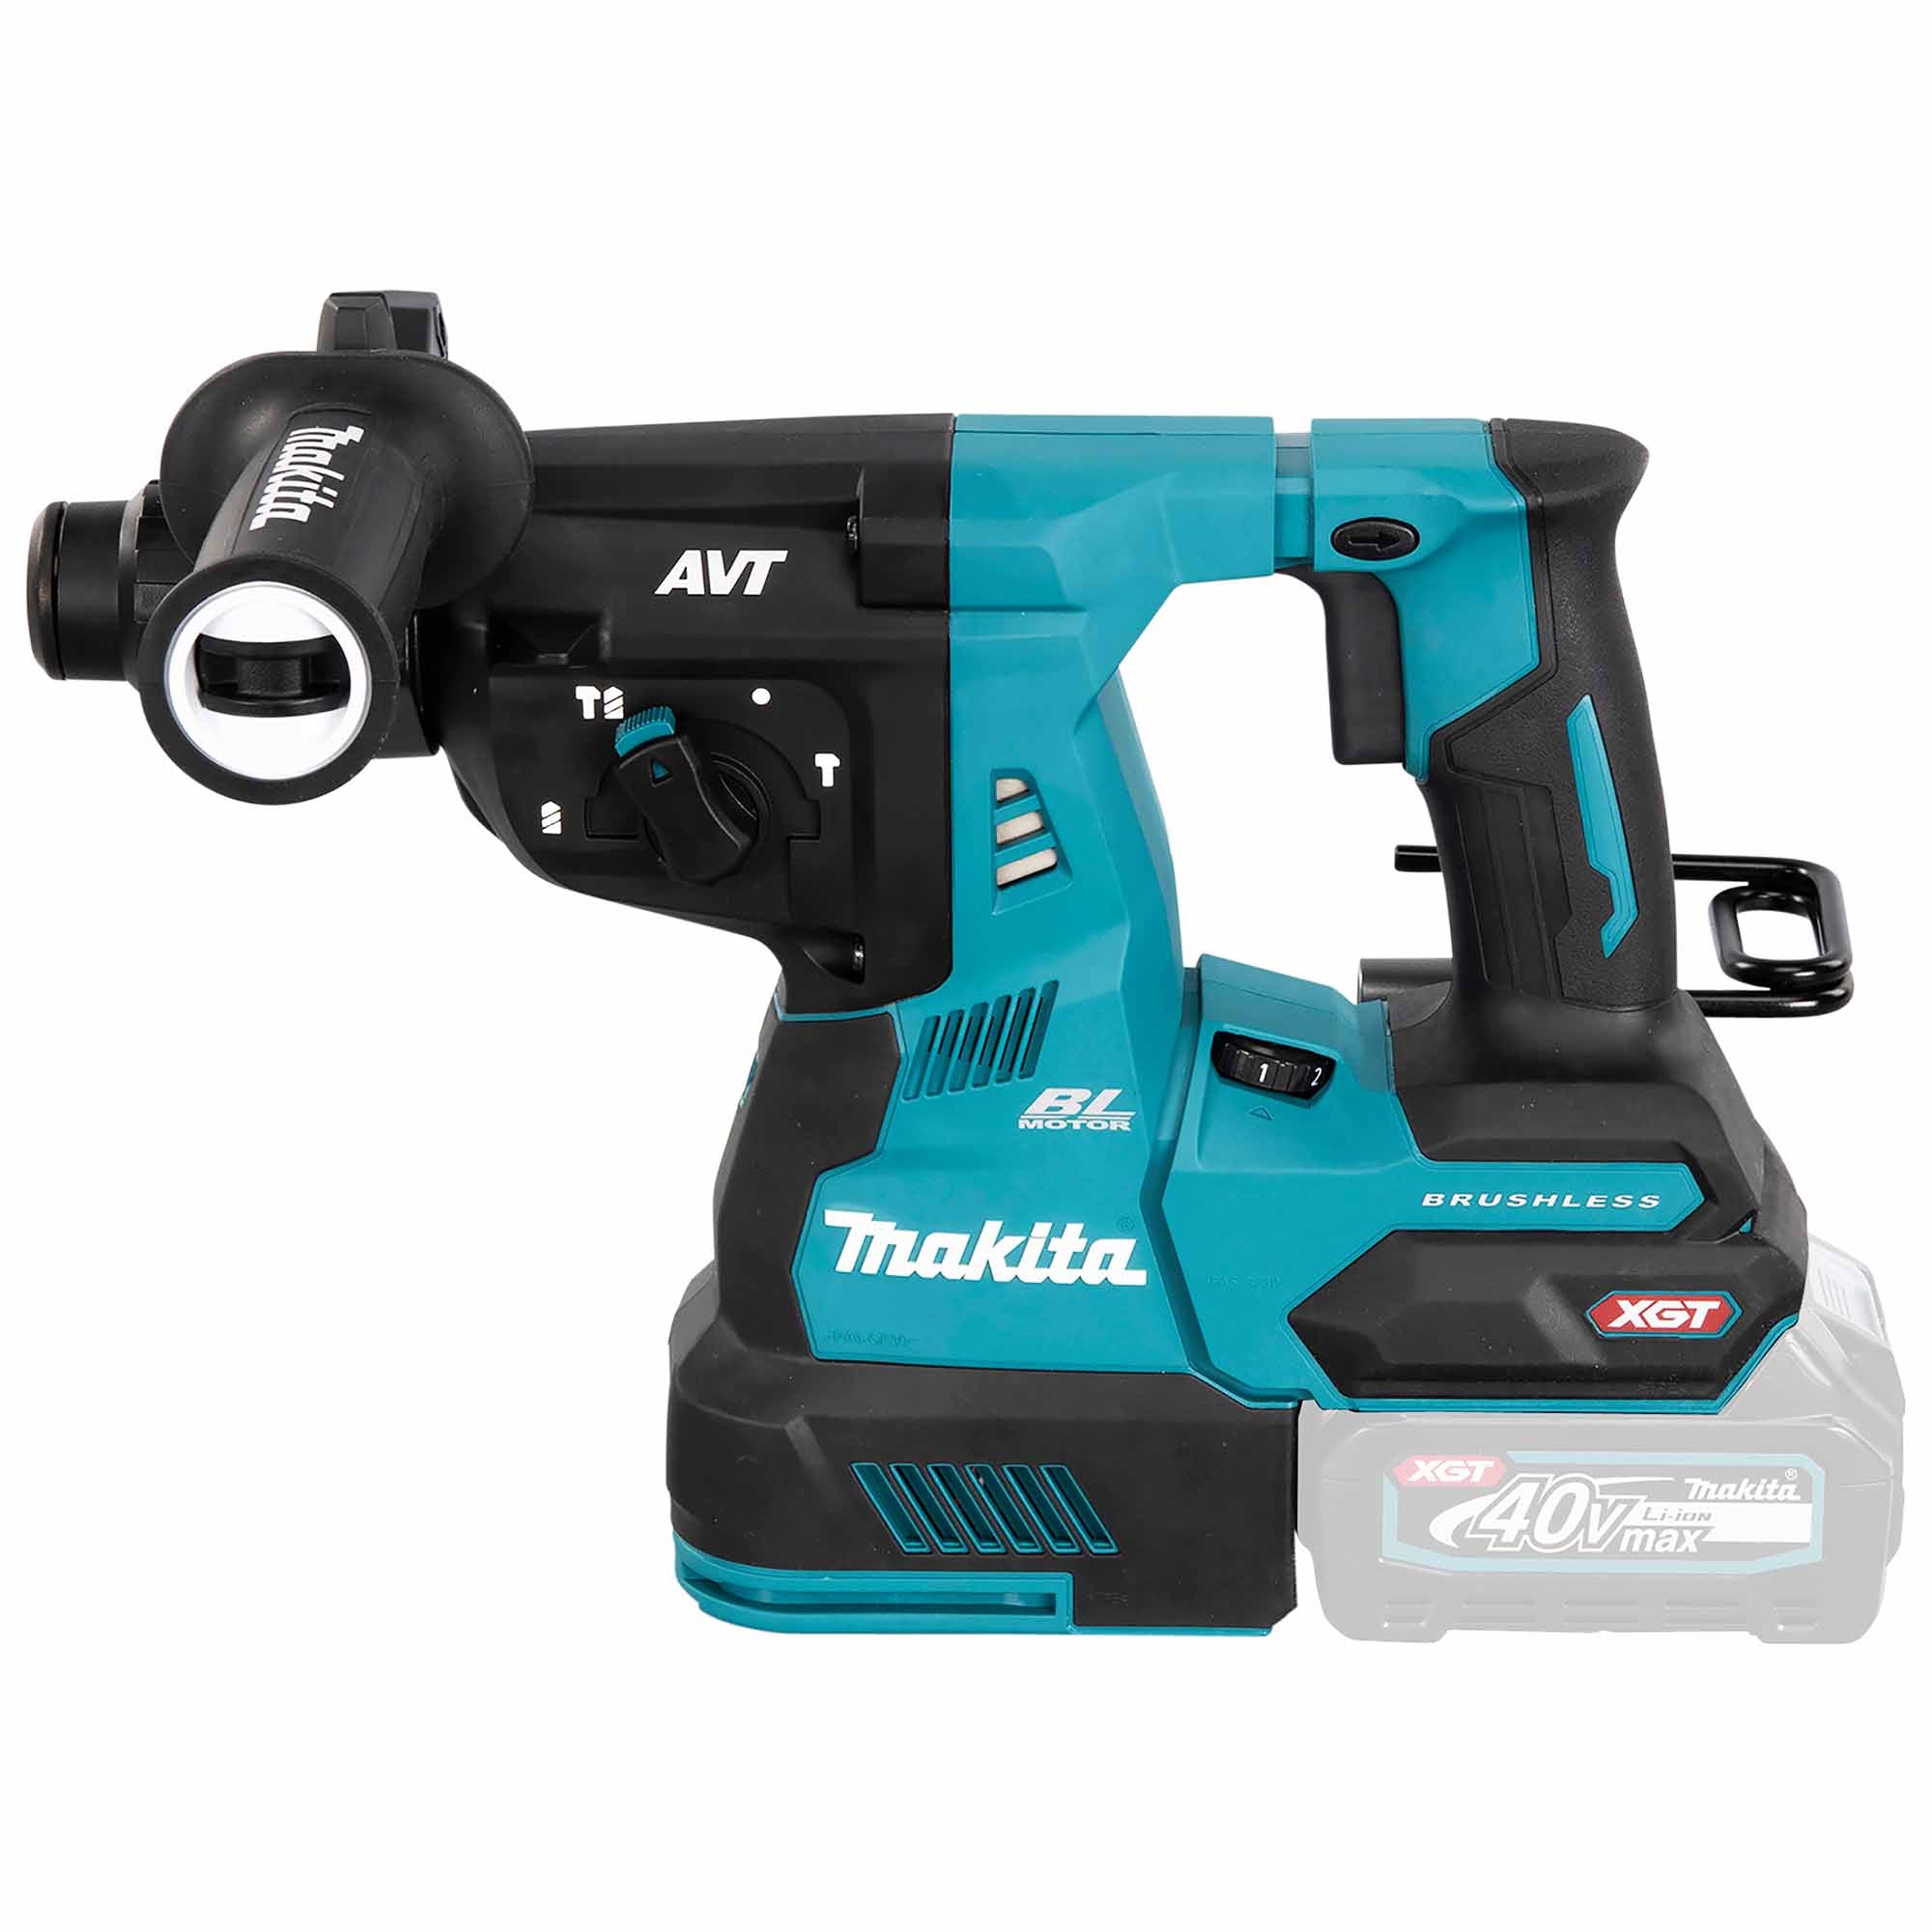 Makita HR003GZ01 40V hammer drill